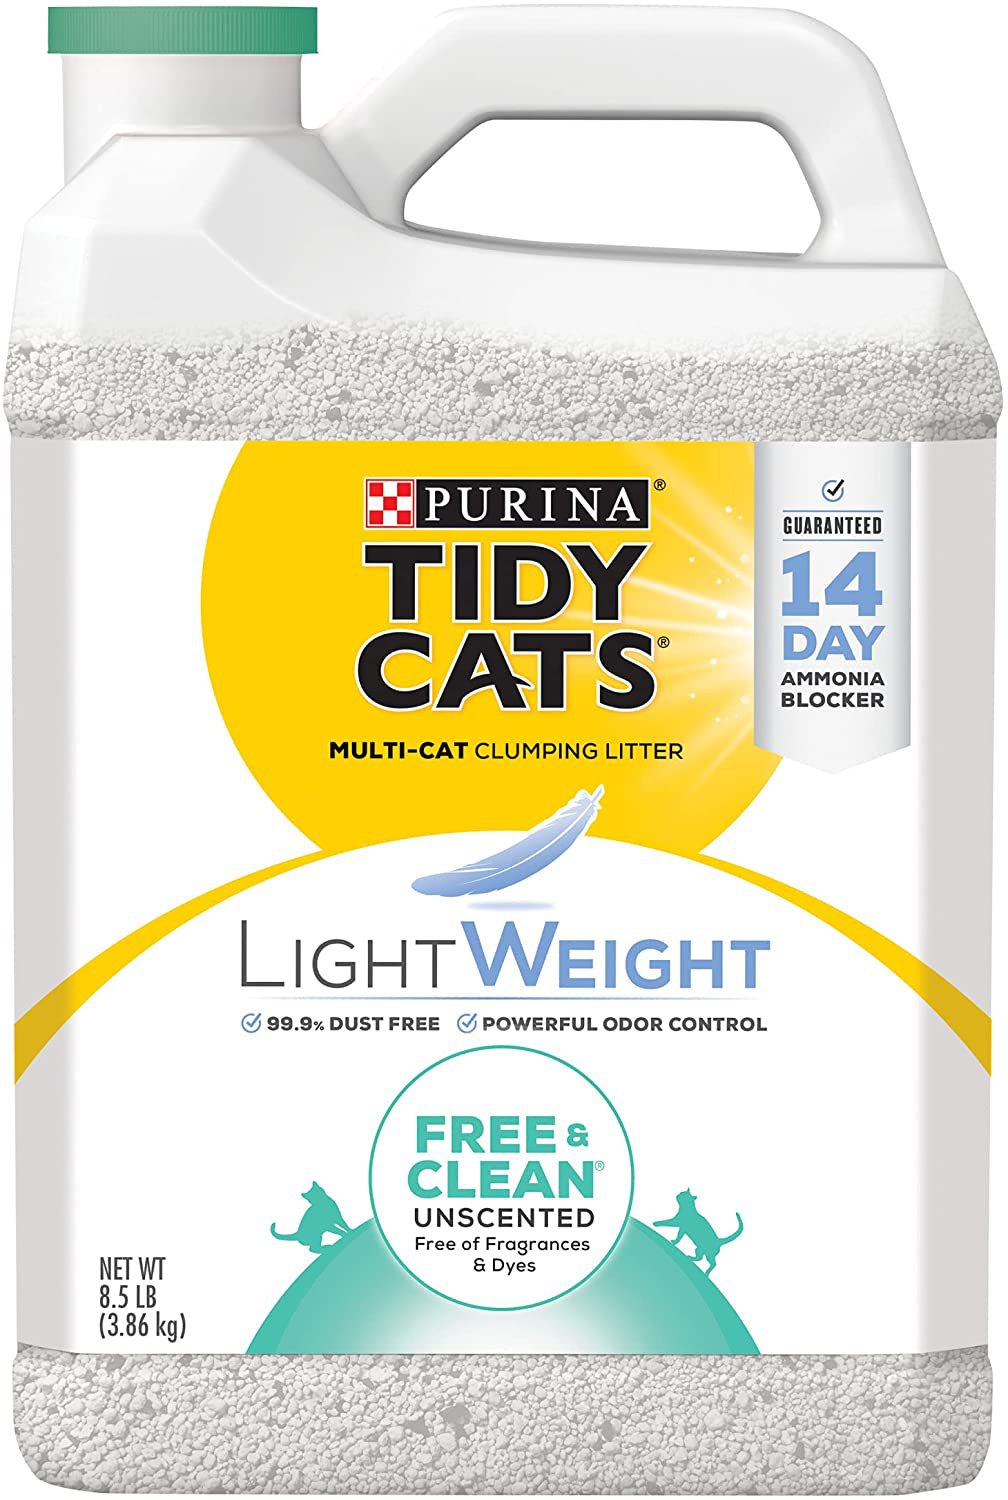 Purina Tidy Cats Lightweight Free & Clean Clumping Cat Litter Animals & Pet Supplies > Pet Supplies > Cat Supplies > Cat Litter Purina Tidy Cats Free & Clean (2) 8.5 lb. Jugs 